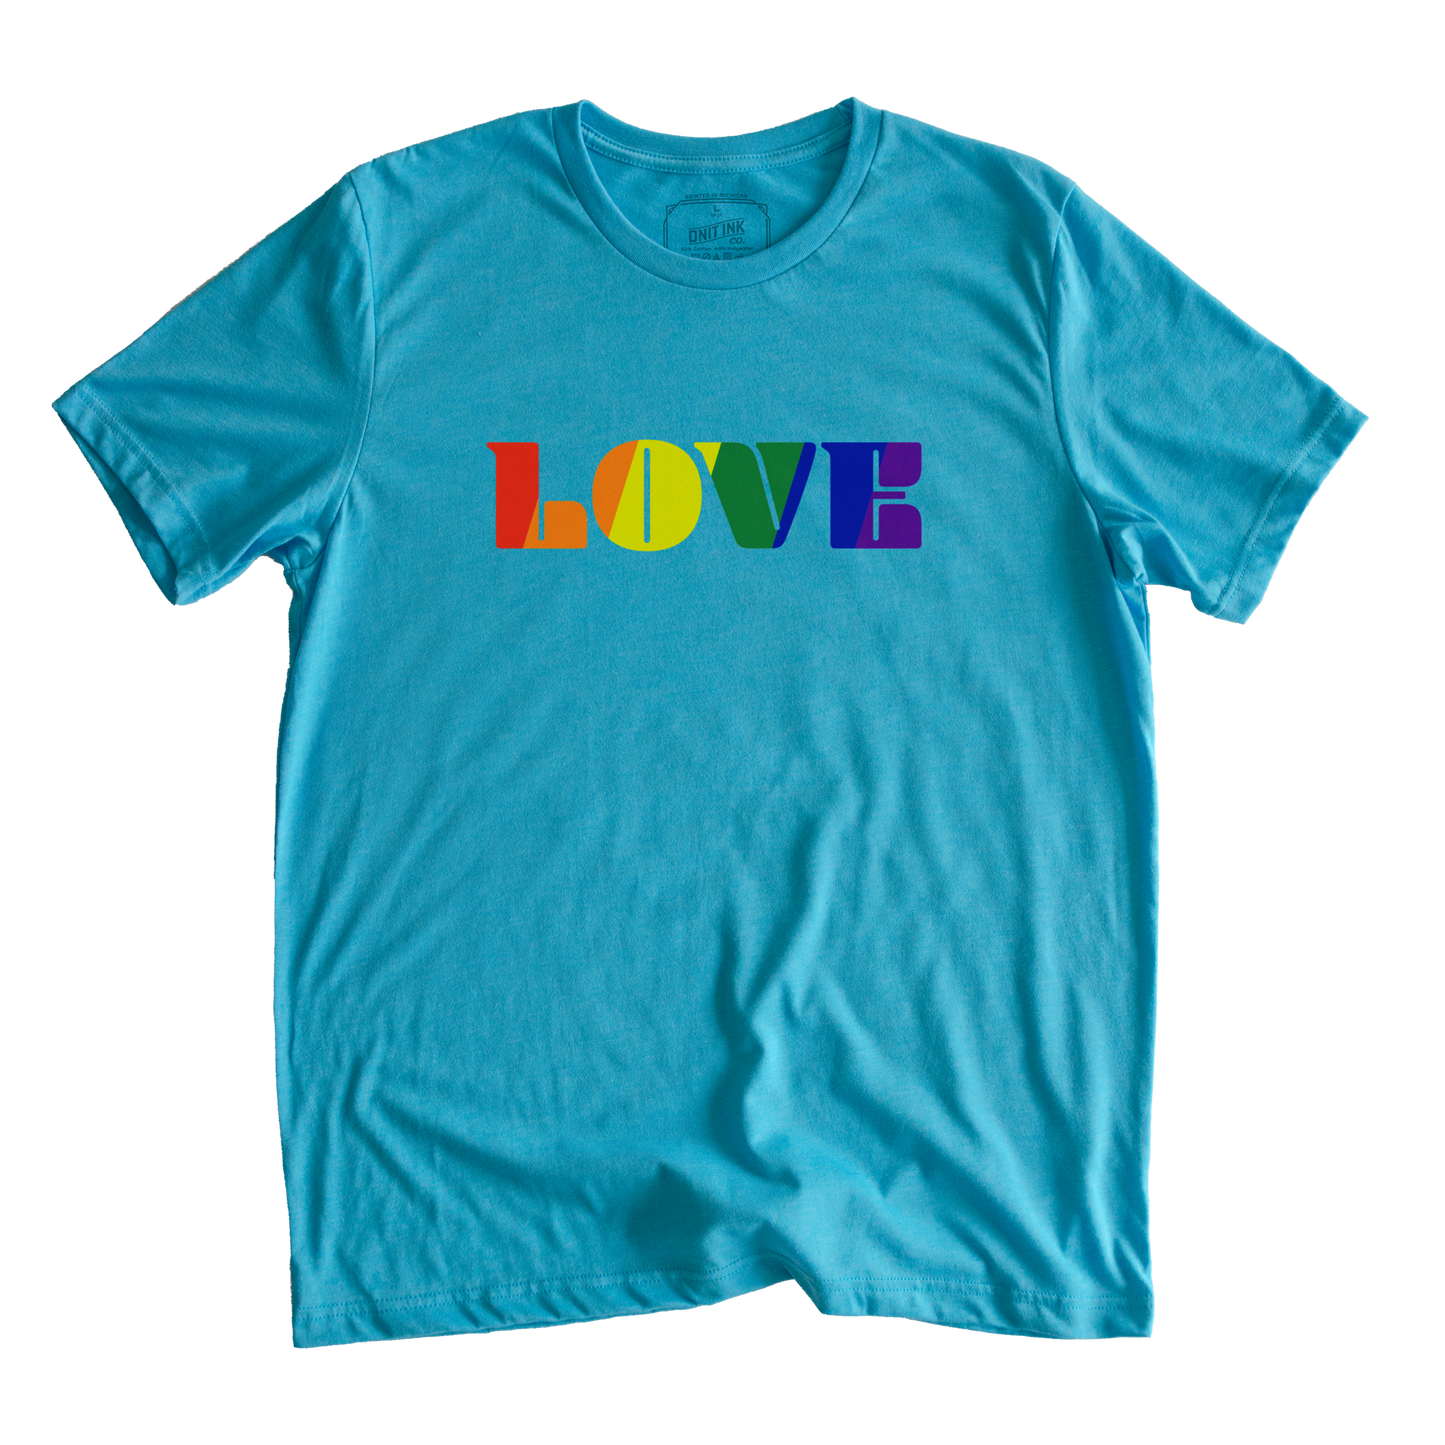 A Lot of LOVE T-Shirt